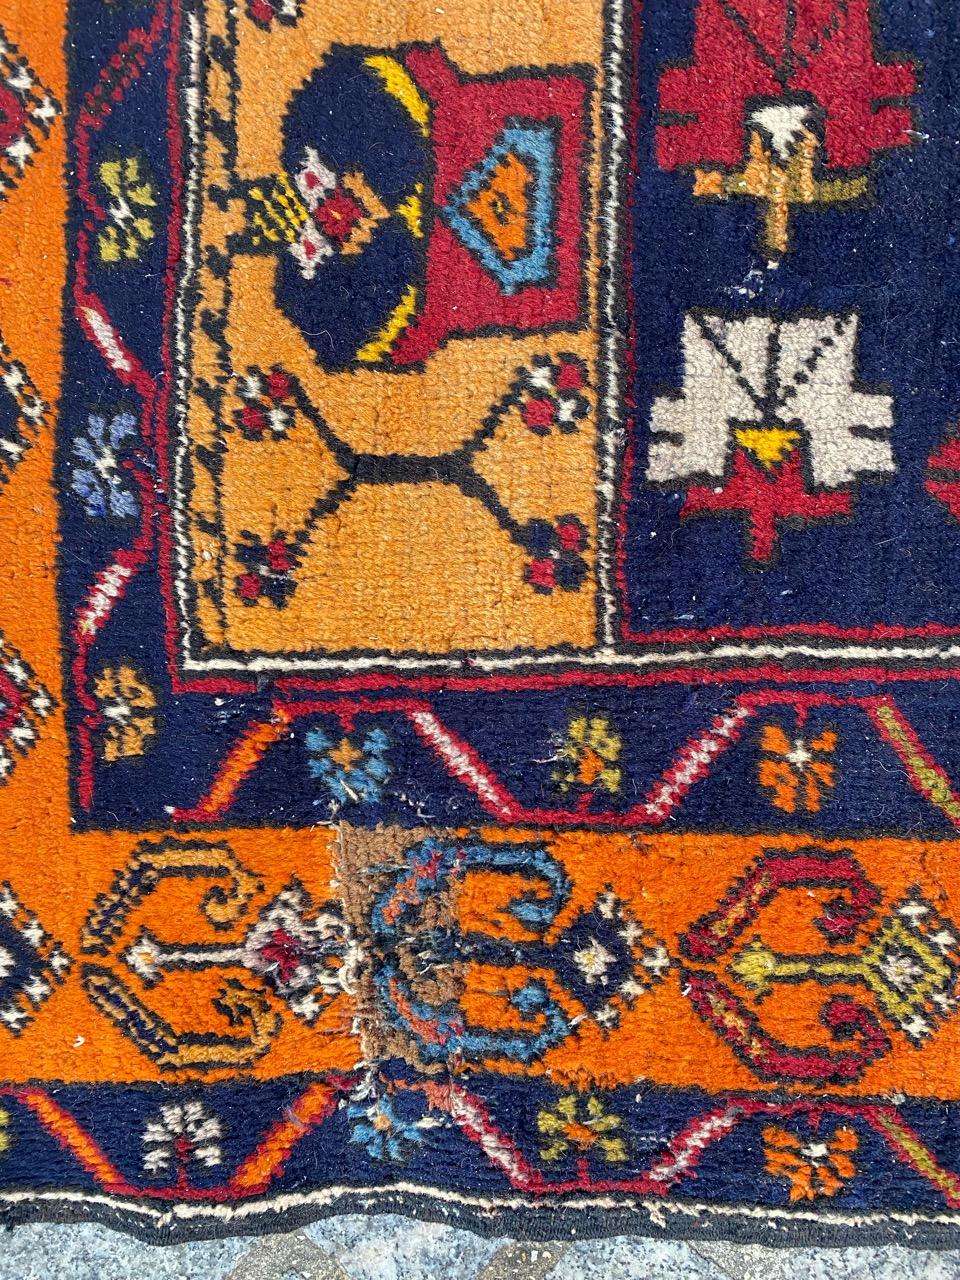 Joli tapis turc du milieu du siècle avec un beau design géométrique et de belles couleurs, entièrement noué à la main avec du velours de laine sur une base de laine.

✨✨✨
